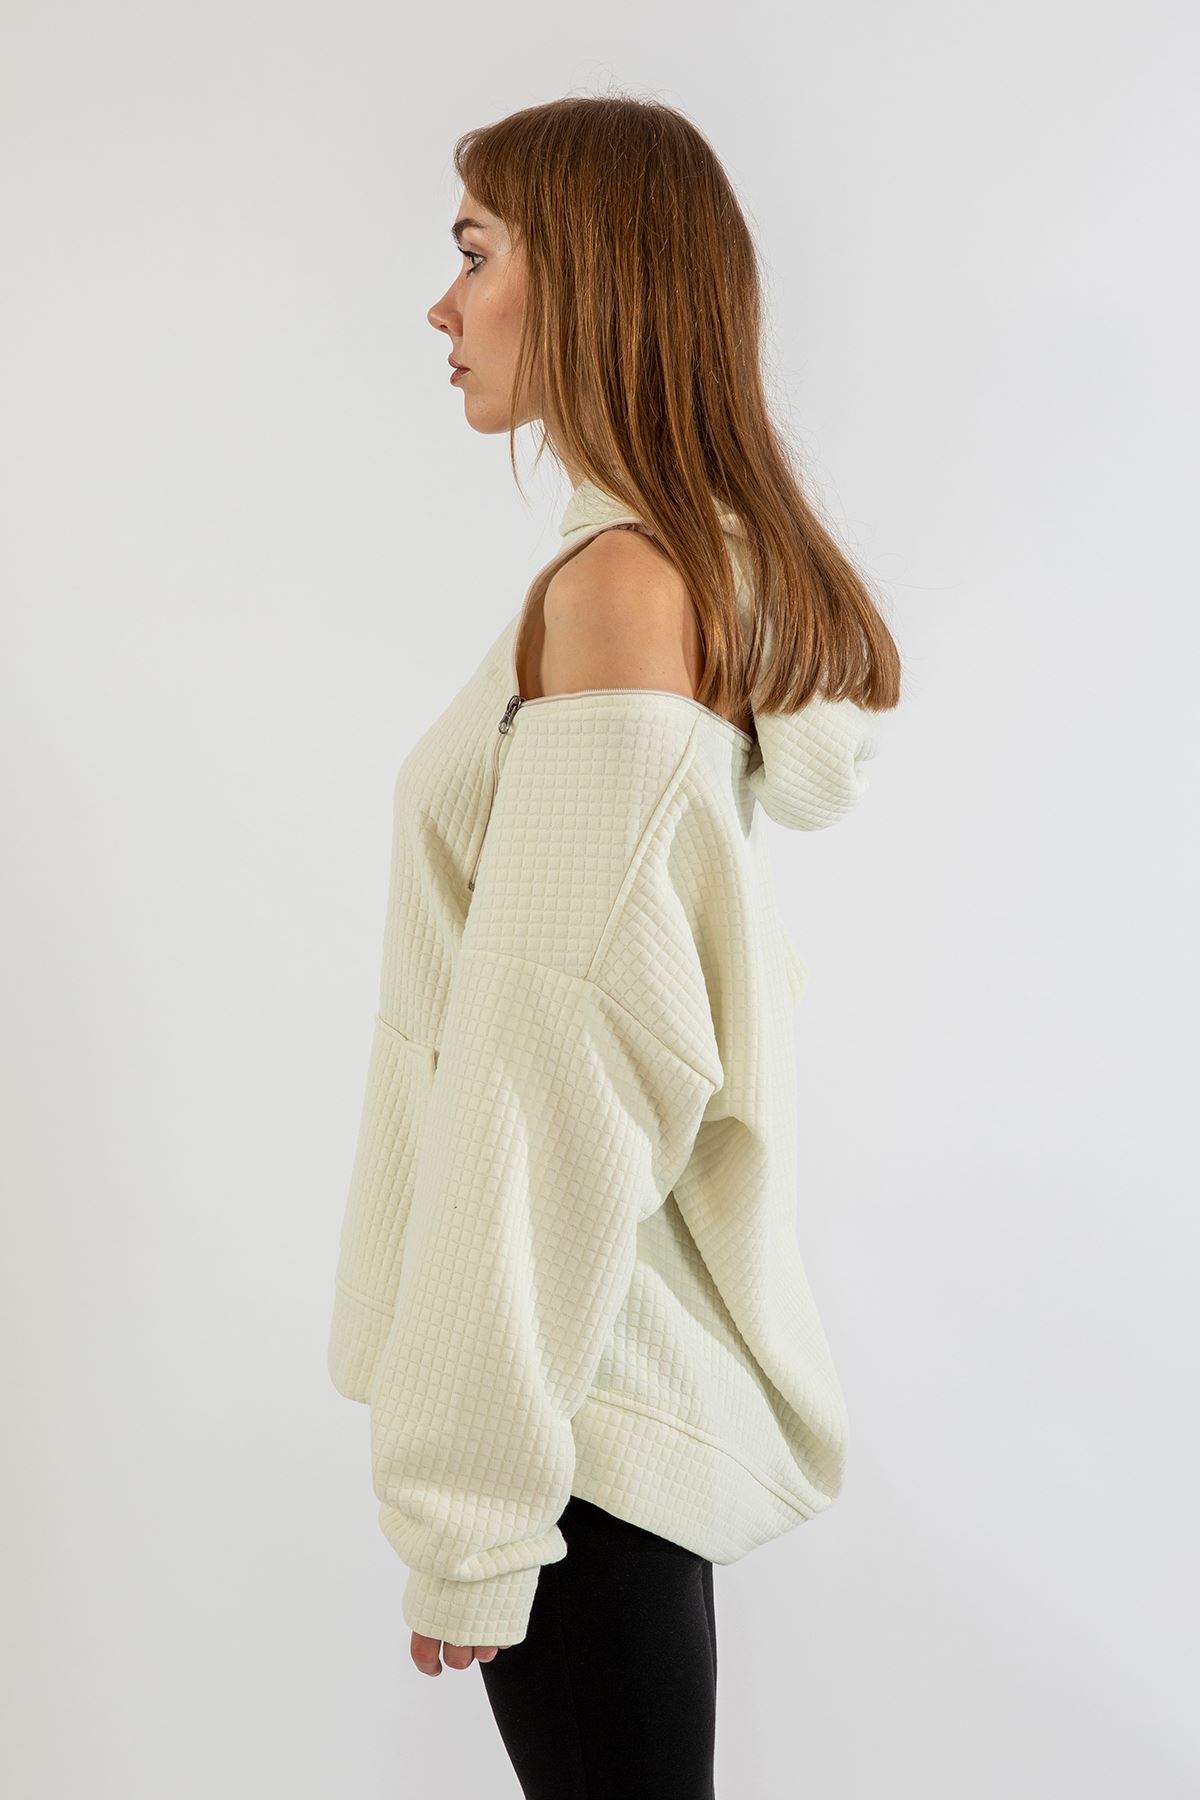 Quilted Fabric Hooded Hip Height Oversize Zip Detailed Women Sweatshirt - Ecru